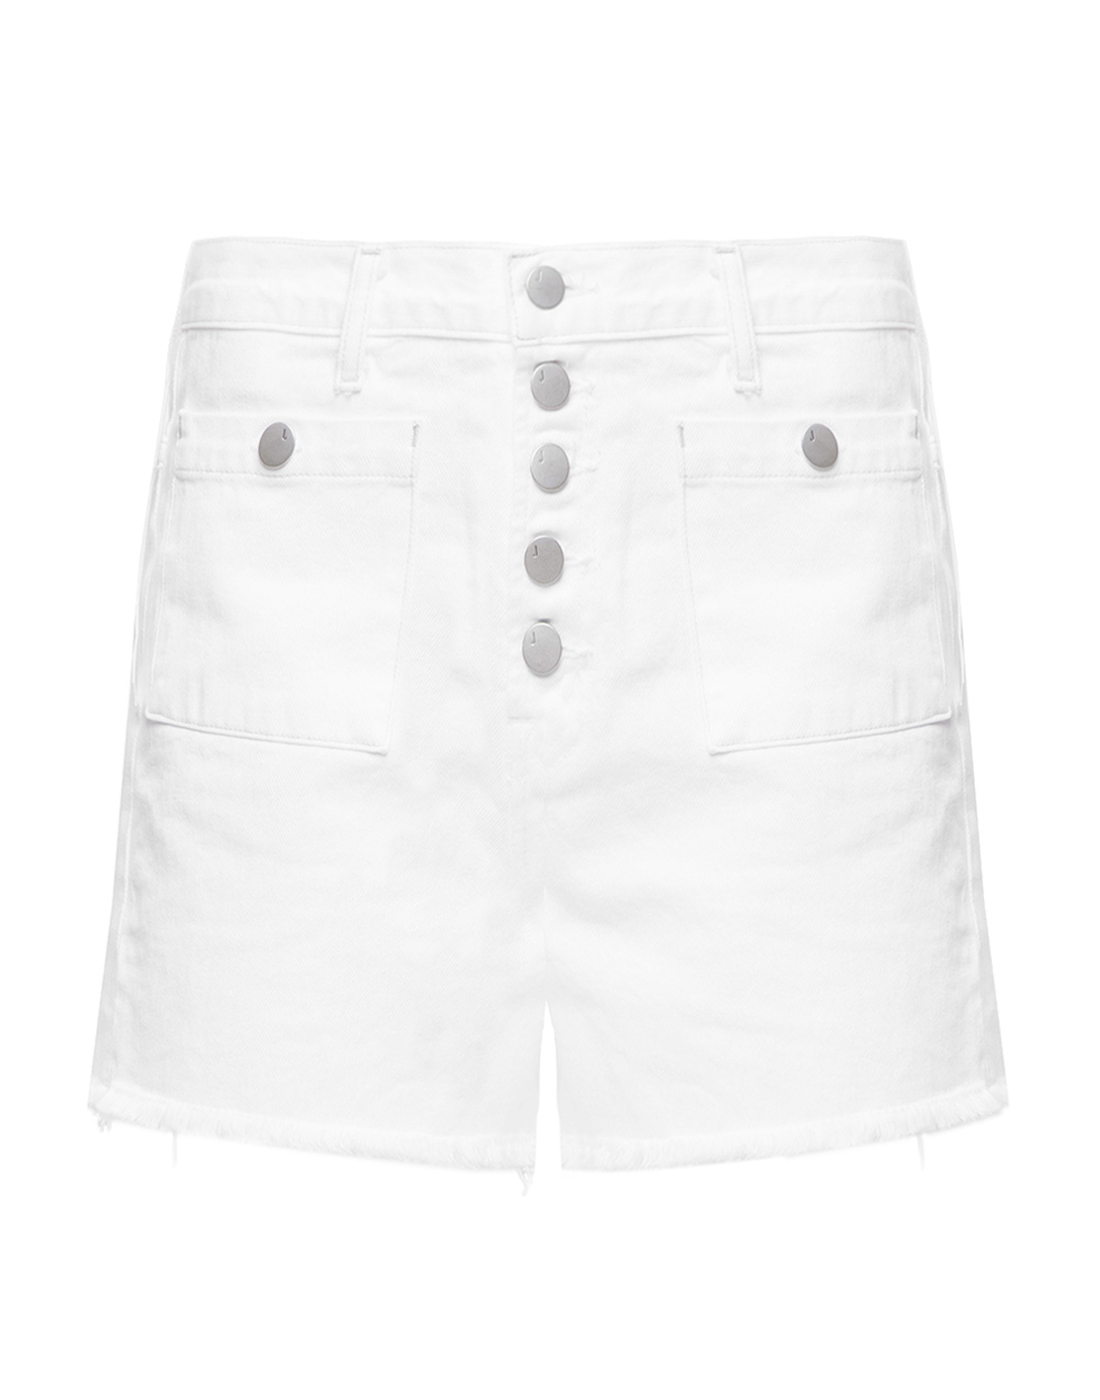 Жіночі білі джинсові шорти-1